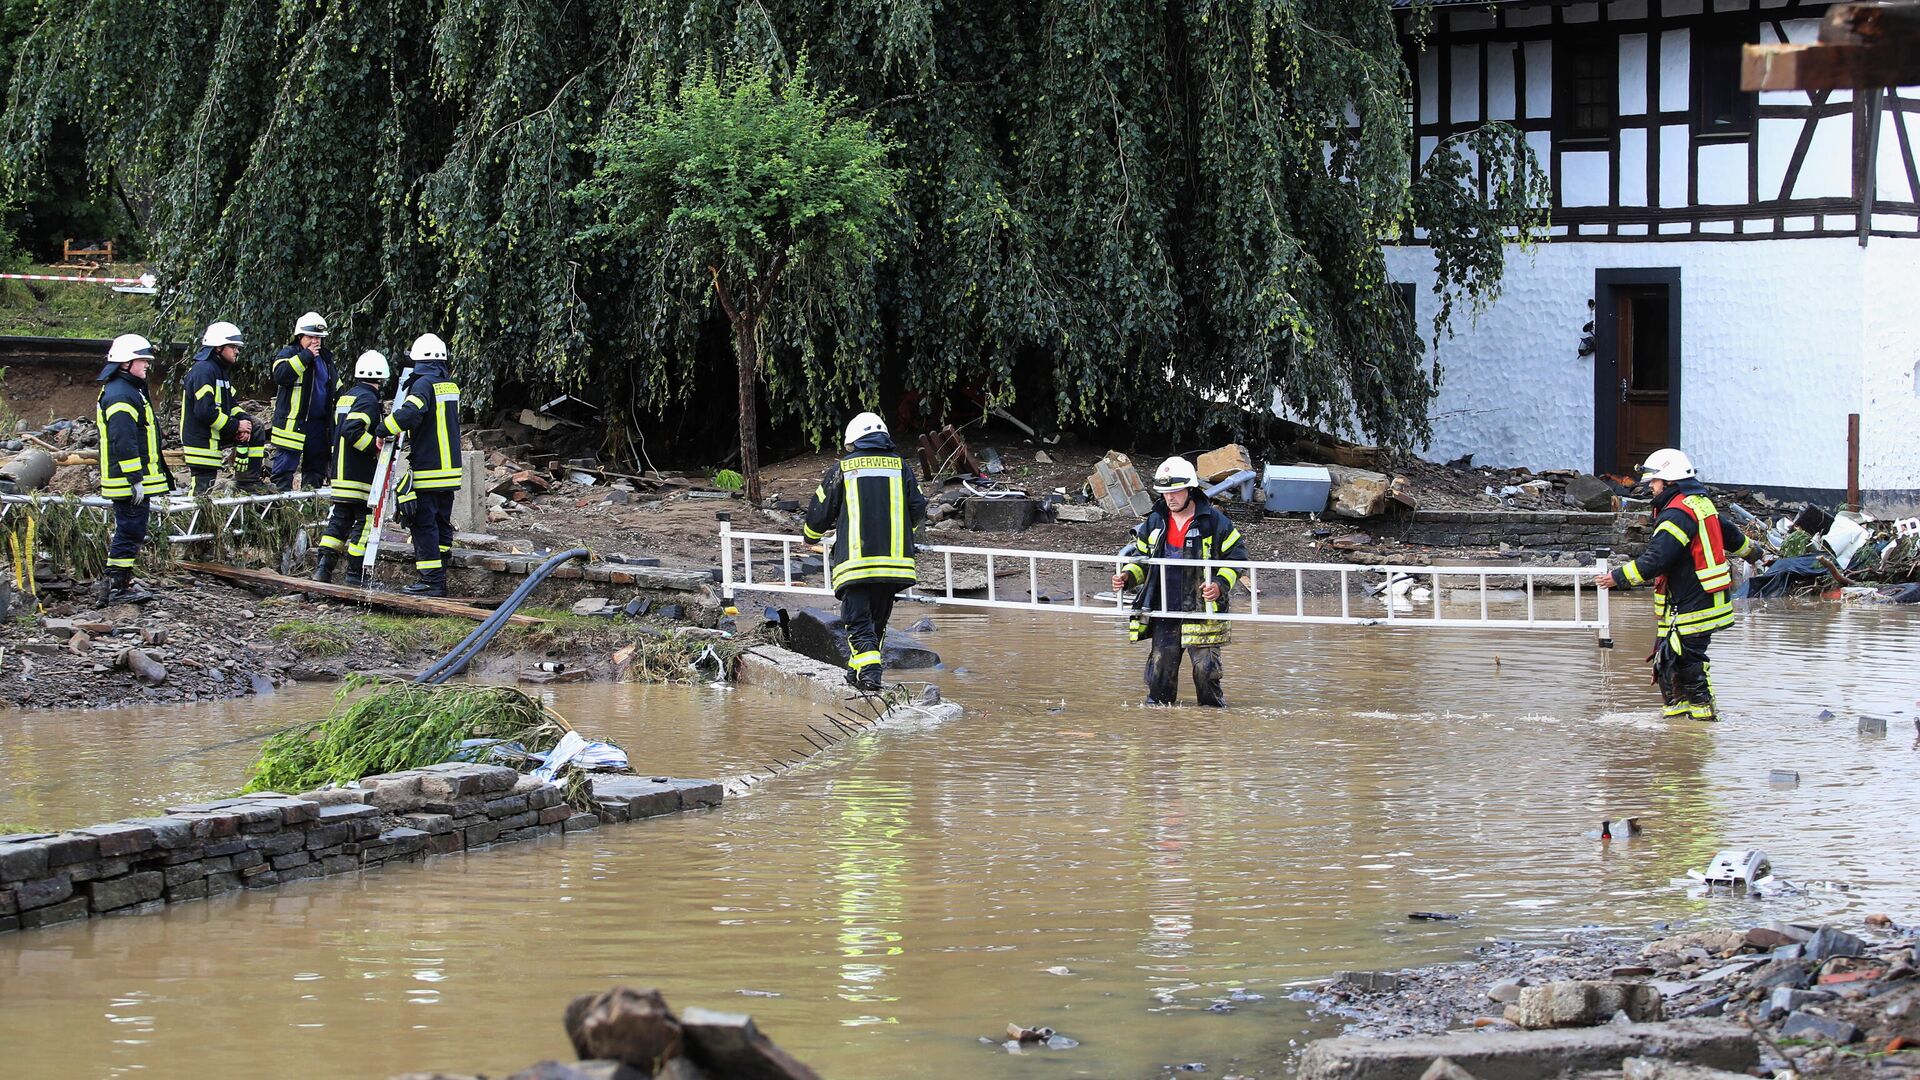 Пожарные работают в зоне, пострадавшей от наводнения после проливных дождей в Шульде, Германия - РИА Новости, 1920, 16.07.2021